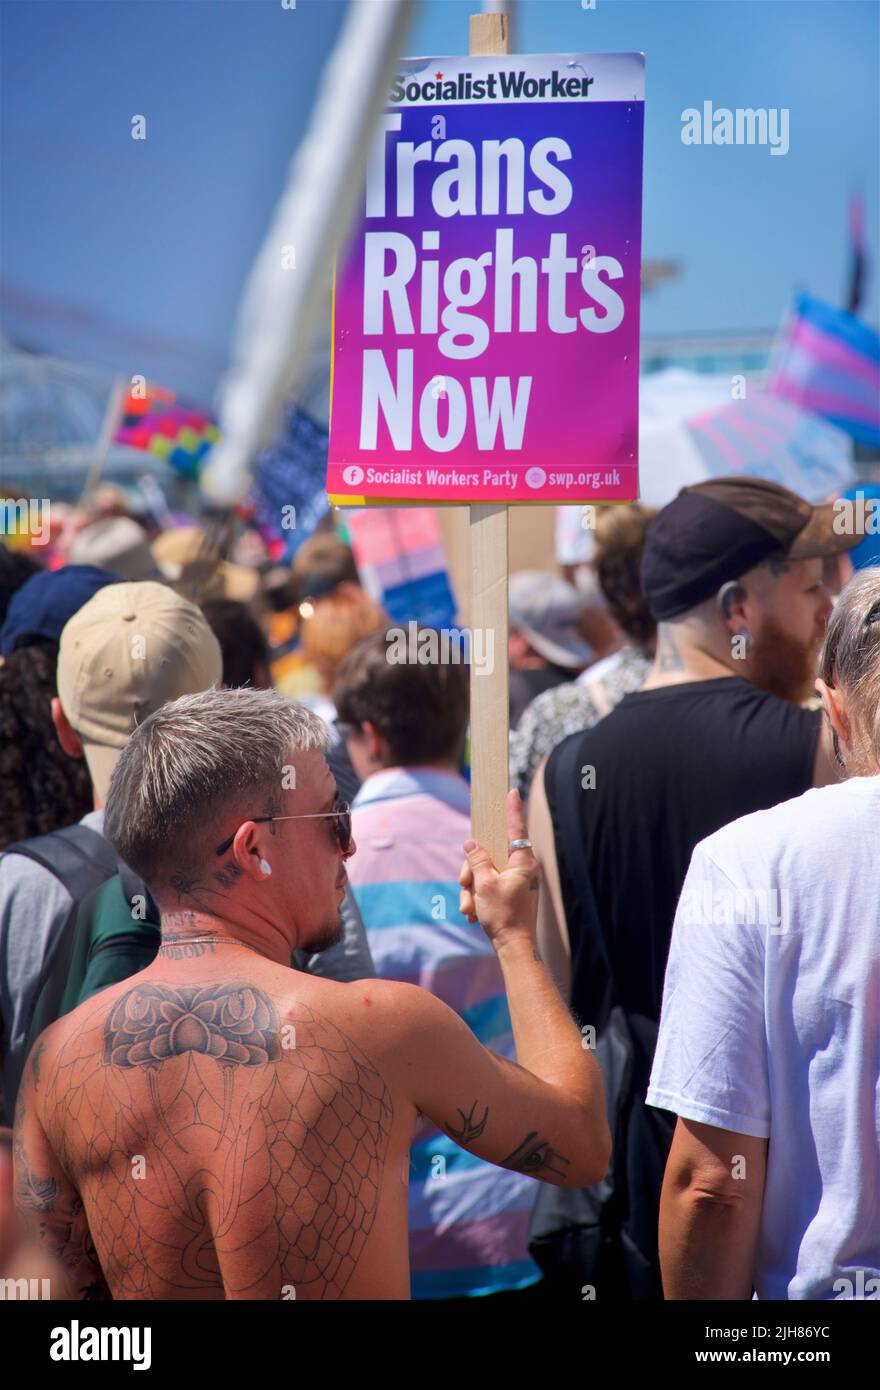 La marche de protestation TRANS Pride Brighton & Hove se fait le long du front de mer, Brighton & Hove. L'étiquette lit les DROITS de transmission MAINTENANT. 16 juillet 2022. Credit: J. Marshall / Alamy Live News Banque D'Images